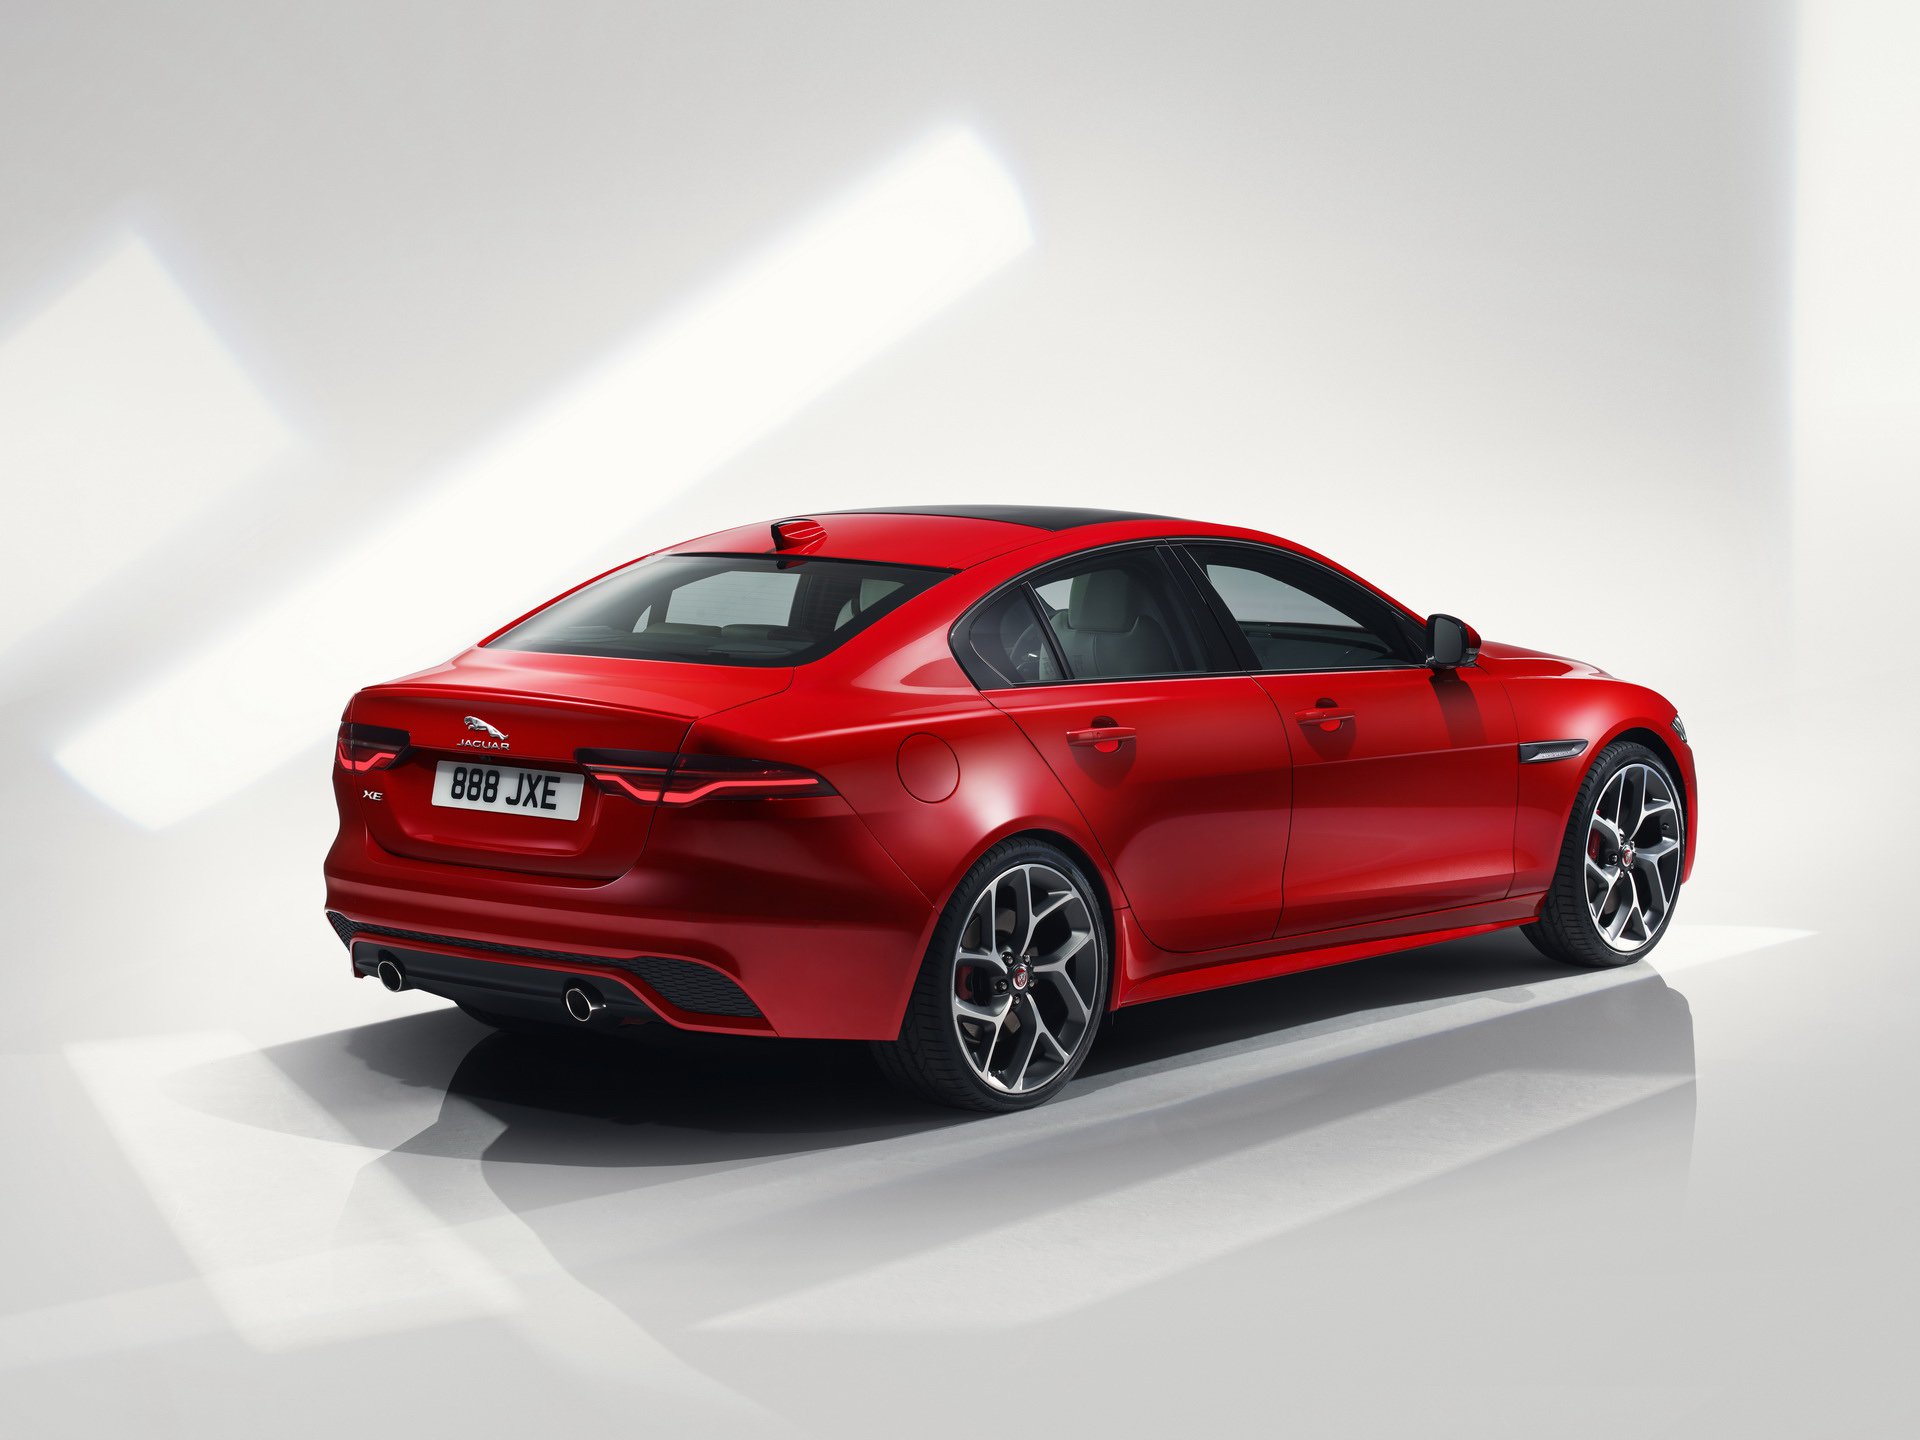 2020 Jaguar XE Revealed, Facelifted Model Drops V6 Engine Option ...